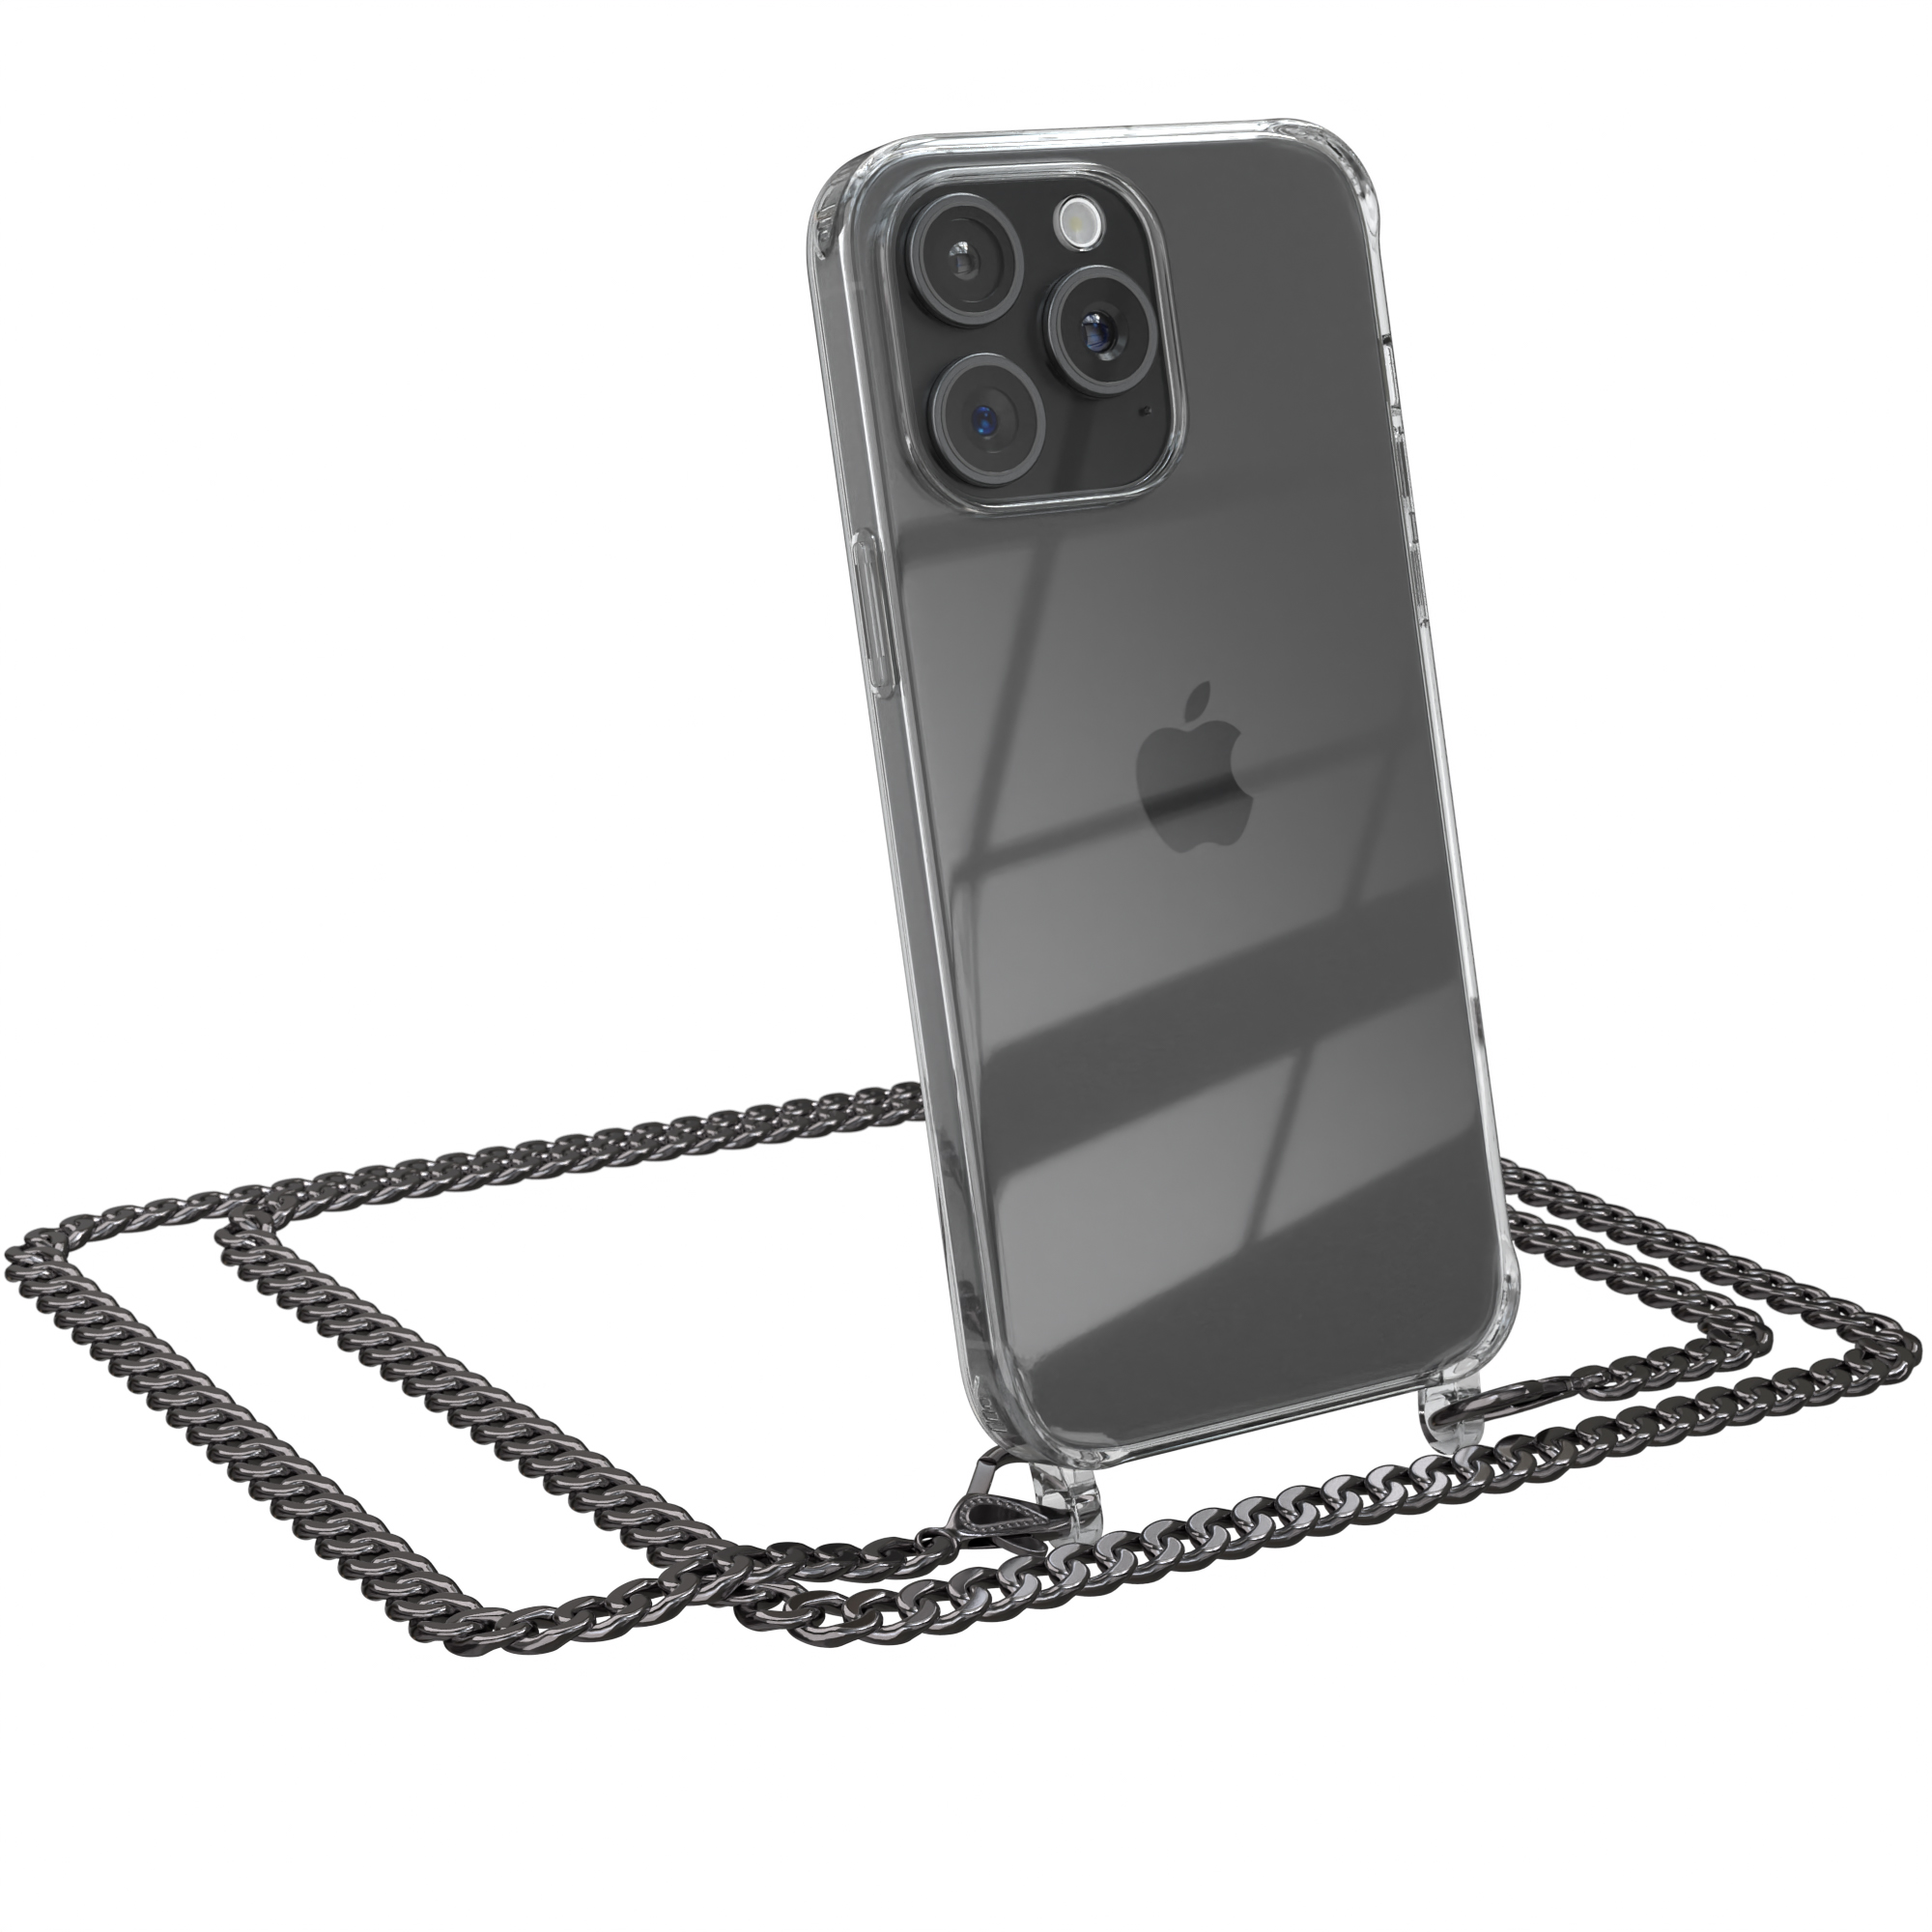 EAZY CASE Handykette Metall + Schwarz, Kordel Max, 15 Apple, extra Pro Anthrazit Grau iPhone Umhängetasche